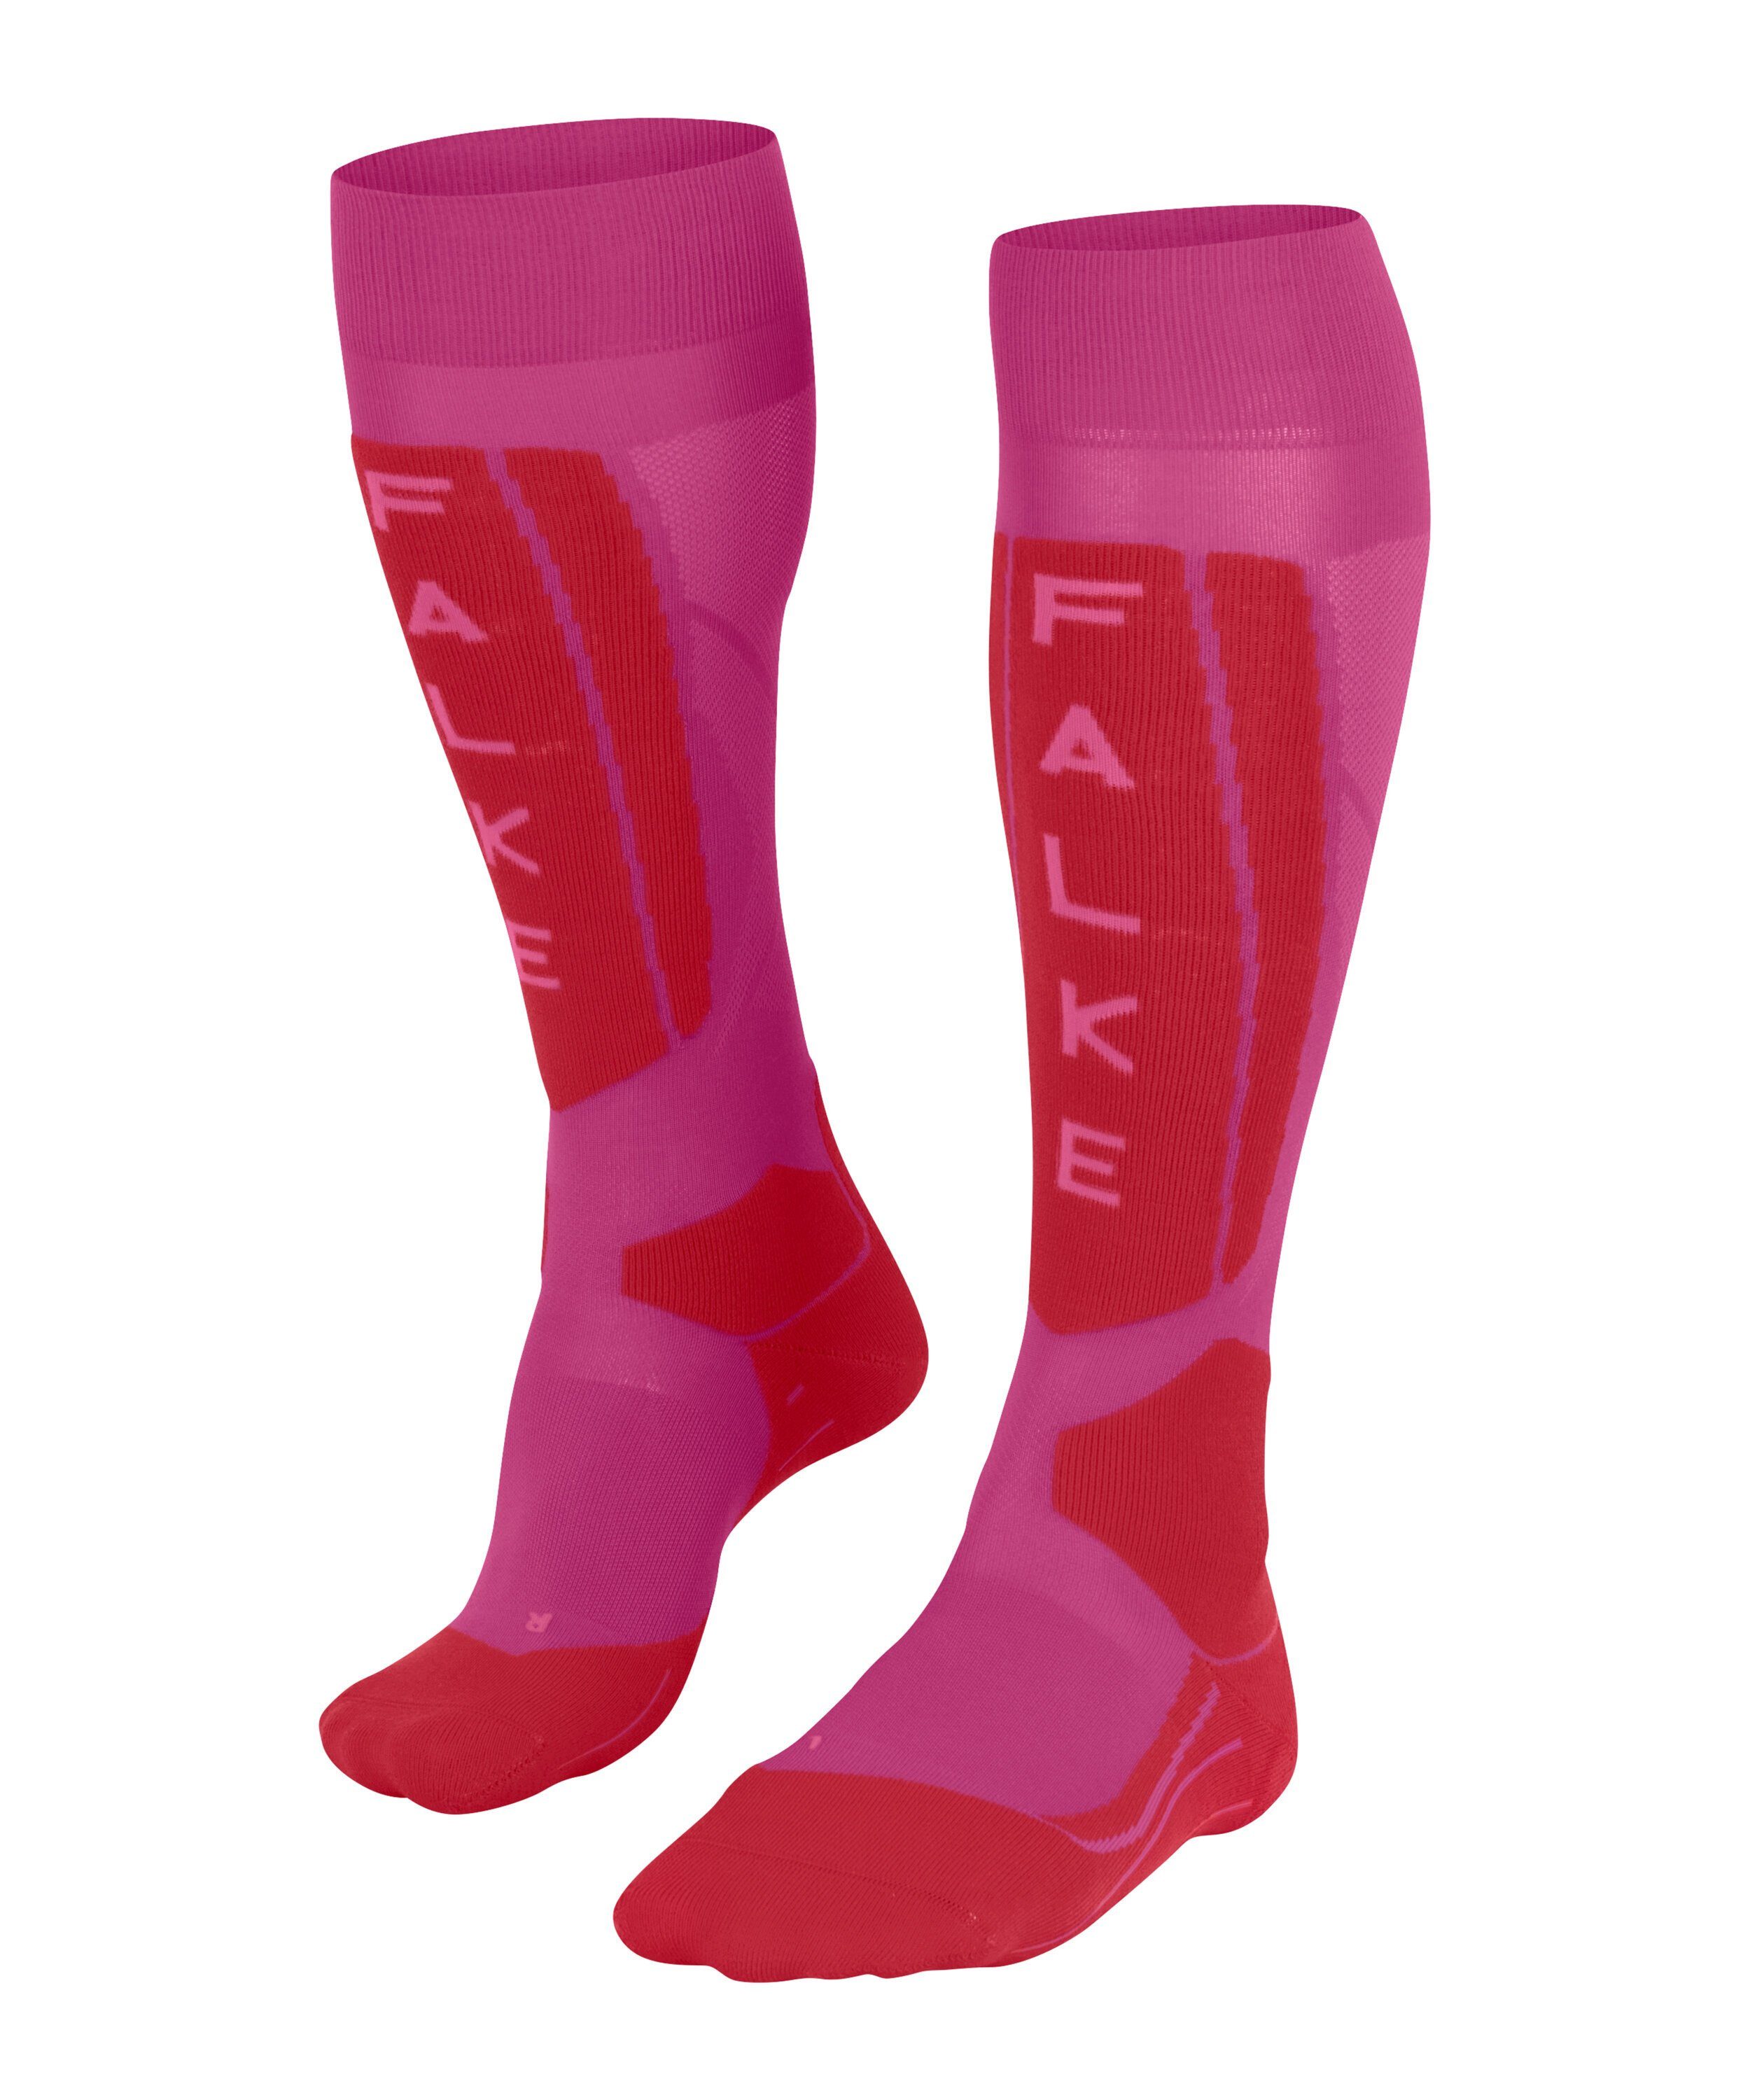 FALKE Skisocken SK5 Expert (1-Paar) ultraleichte Polsterung für direkte Kontrolle lipstick pink (8528)